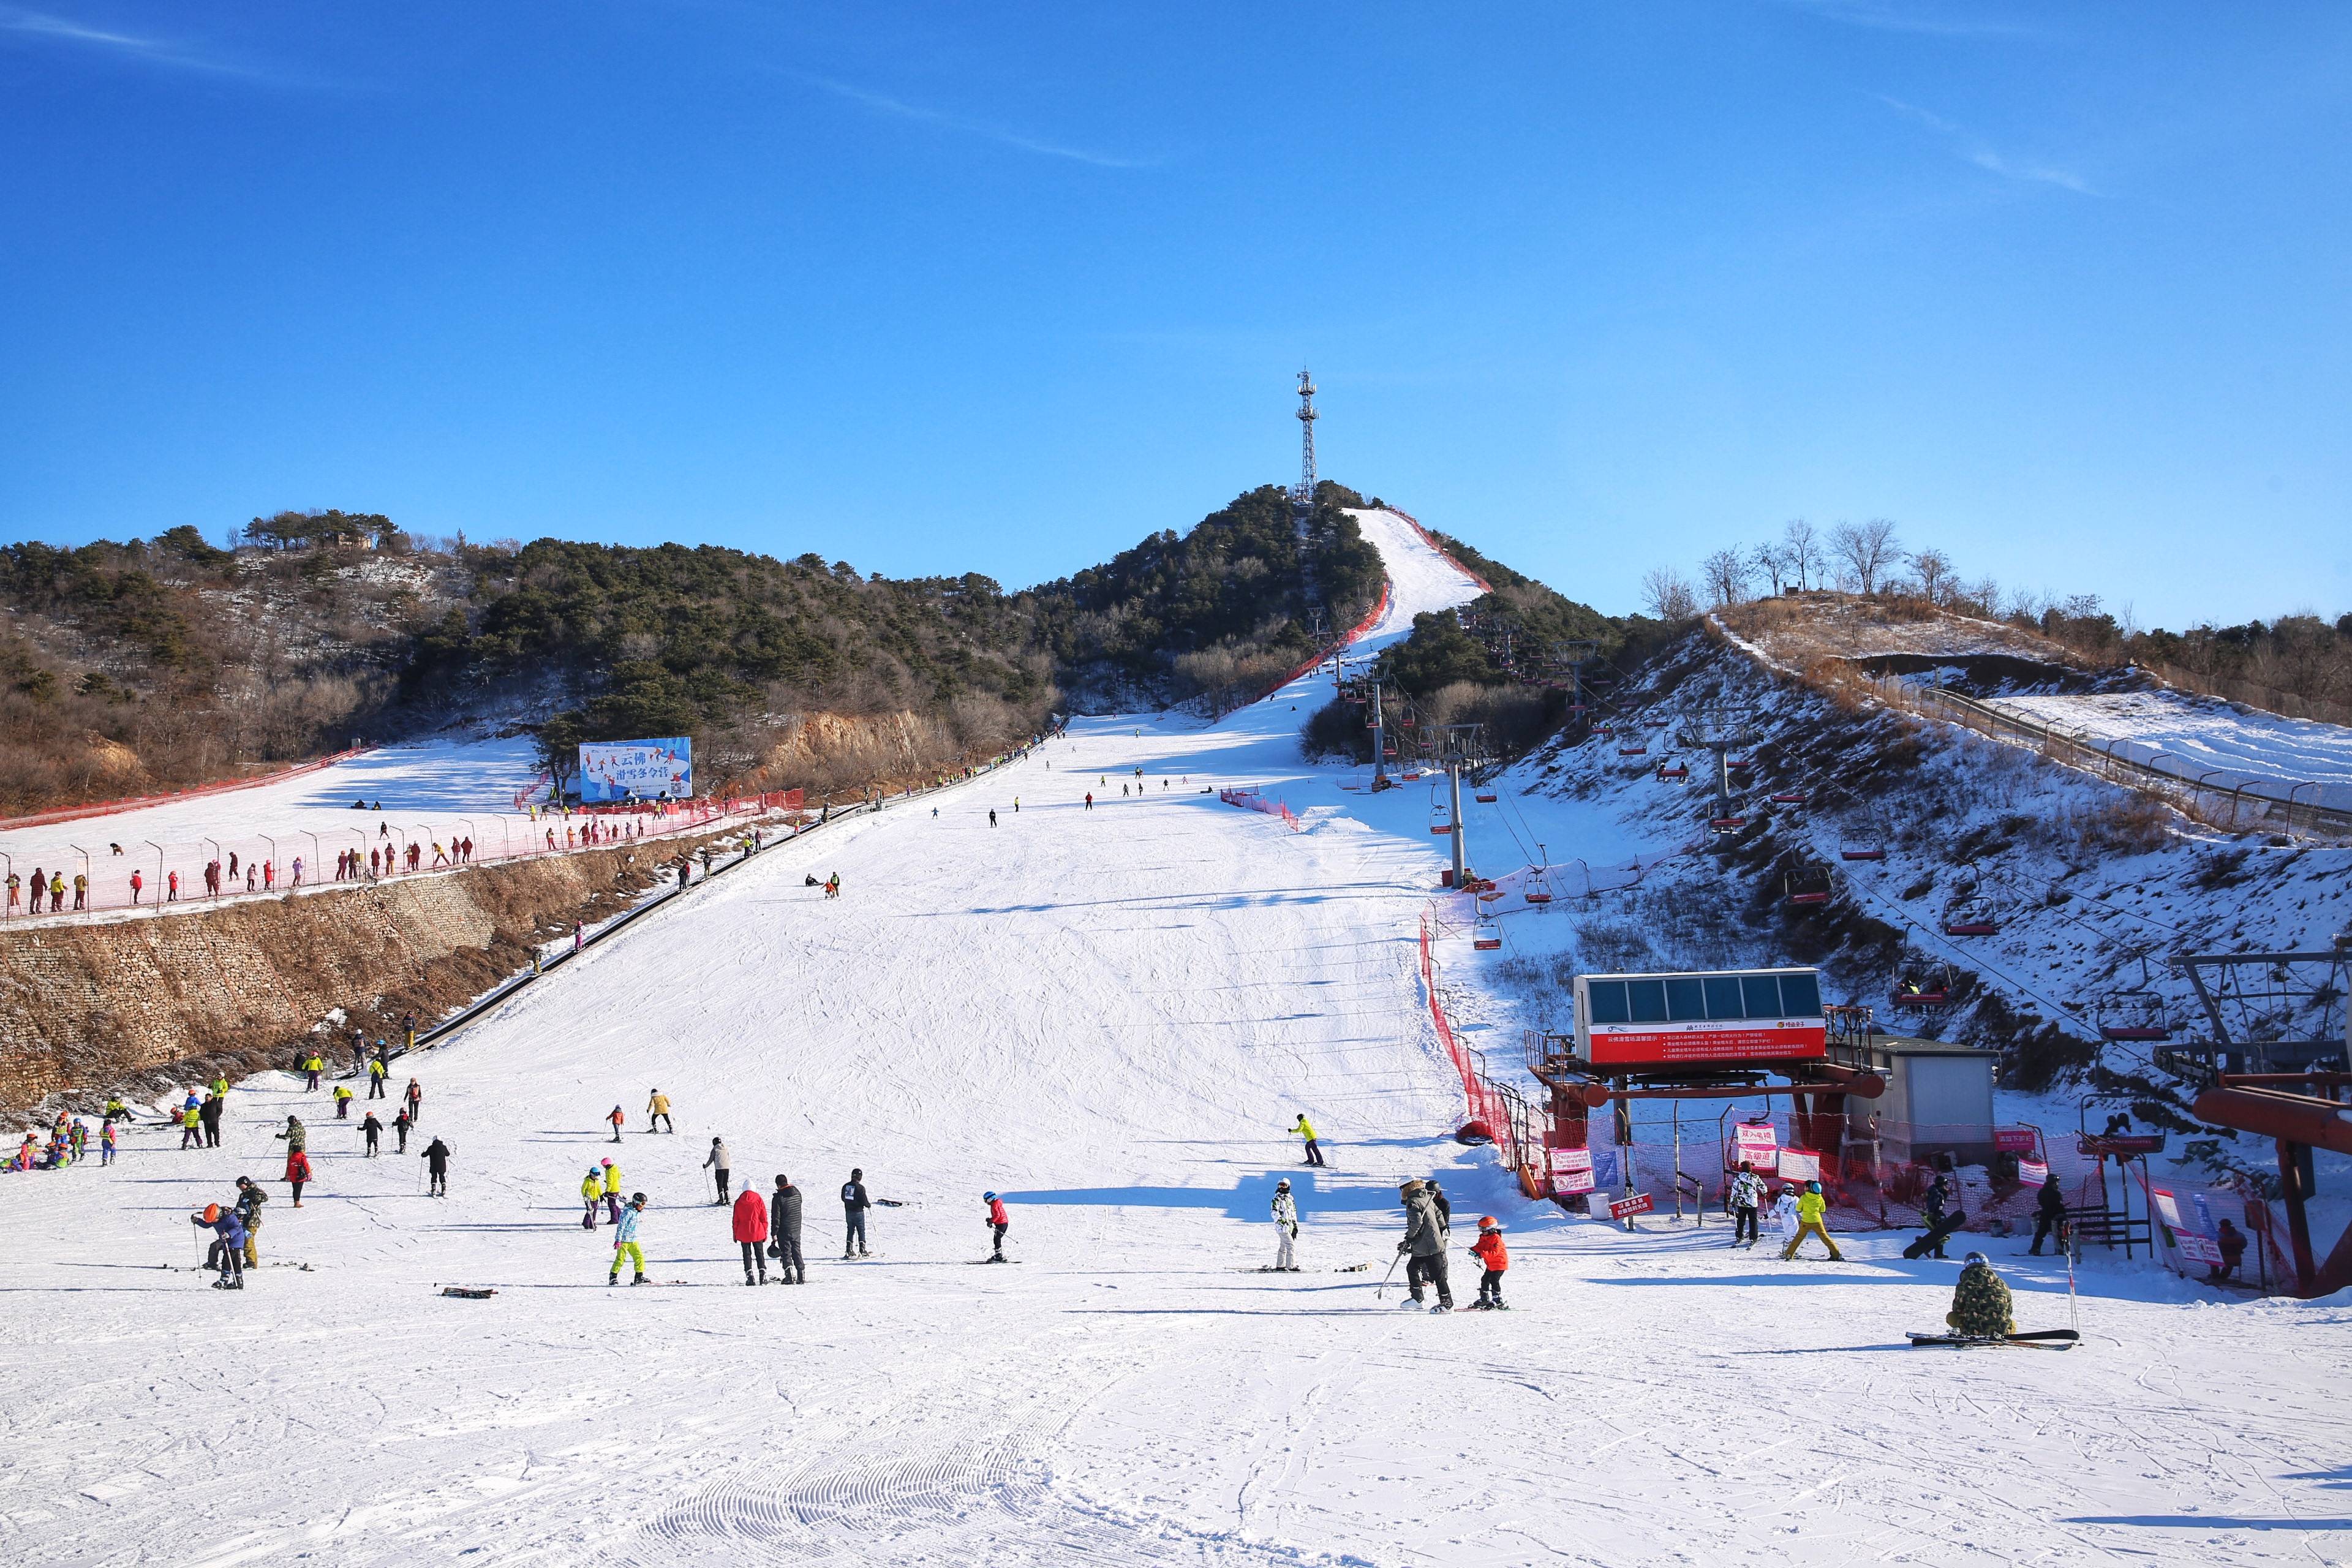 「云佛山滑雪」12.5/6，最后一周特价99元，北京周边性价比最高的综合性雪场，双板免费教